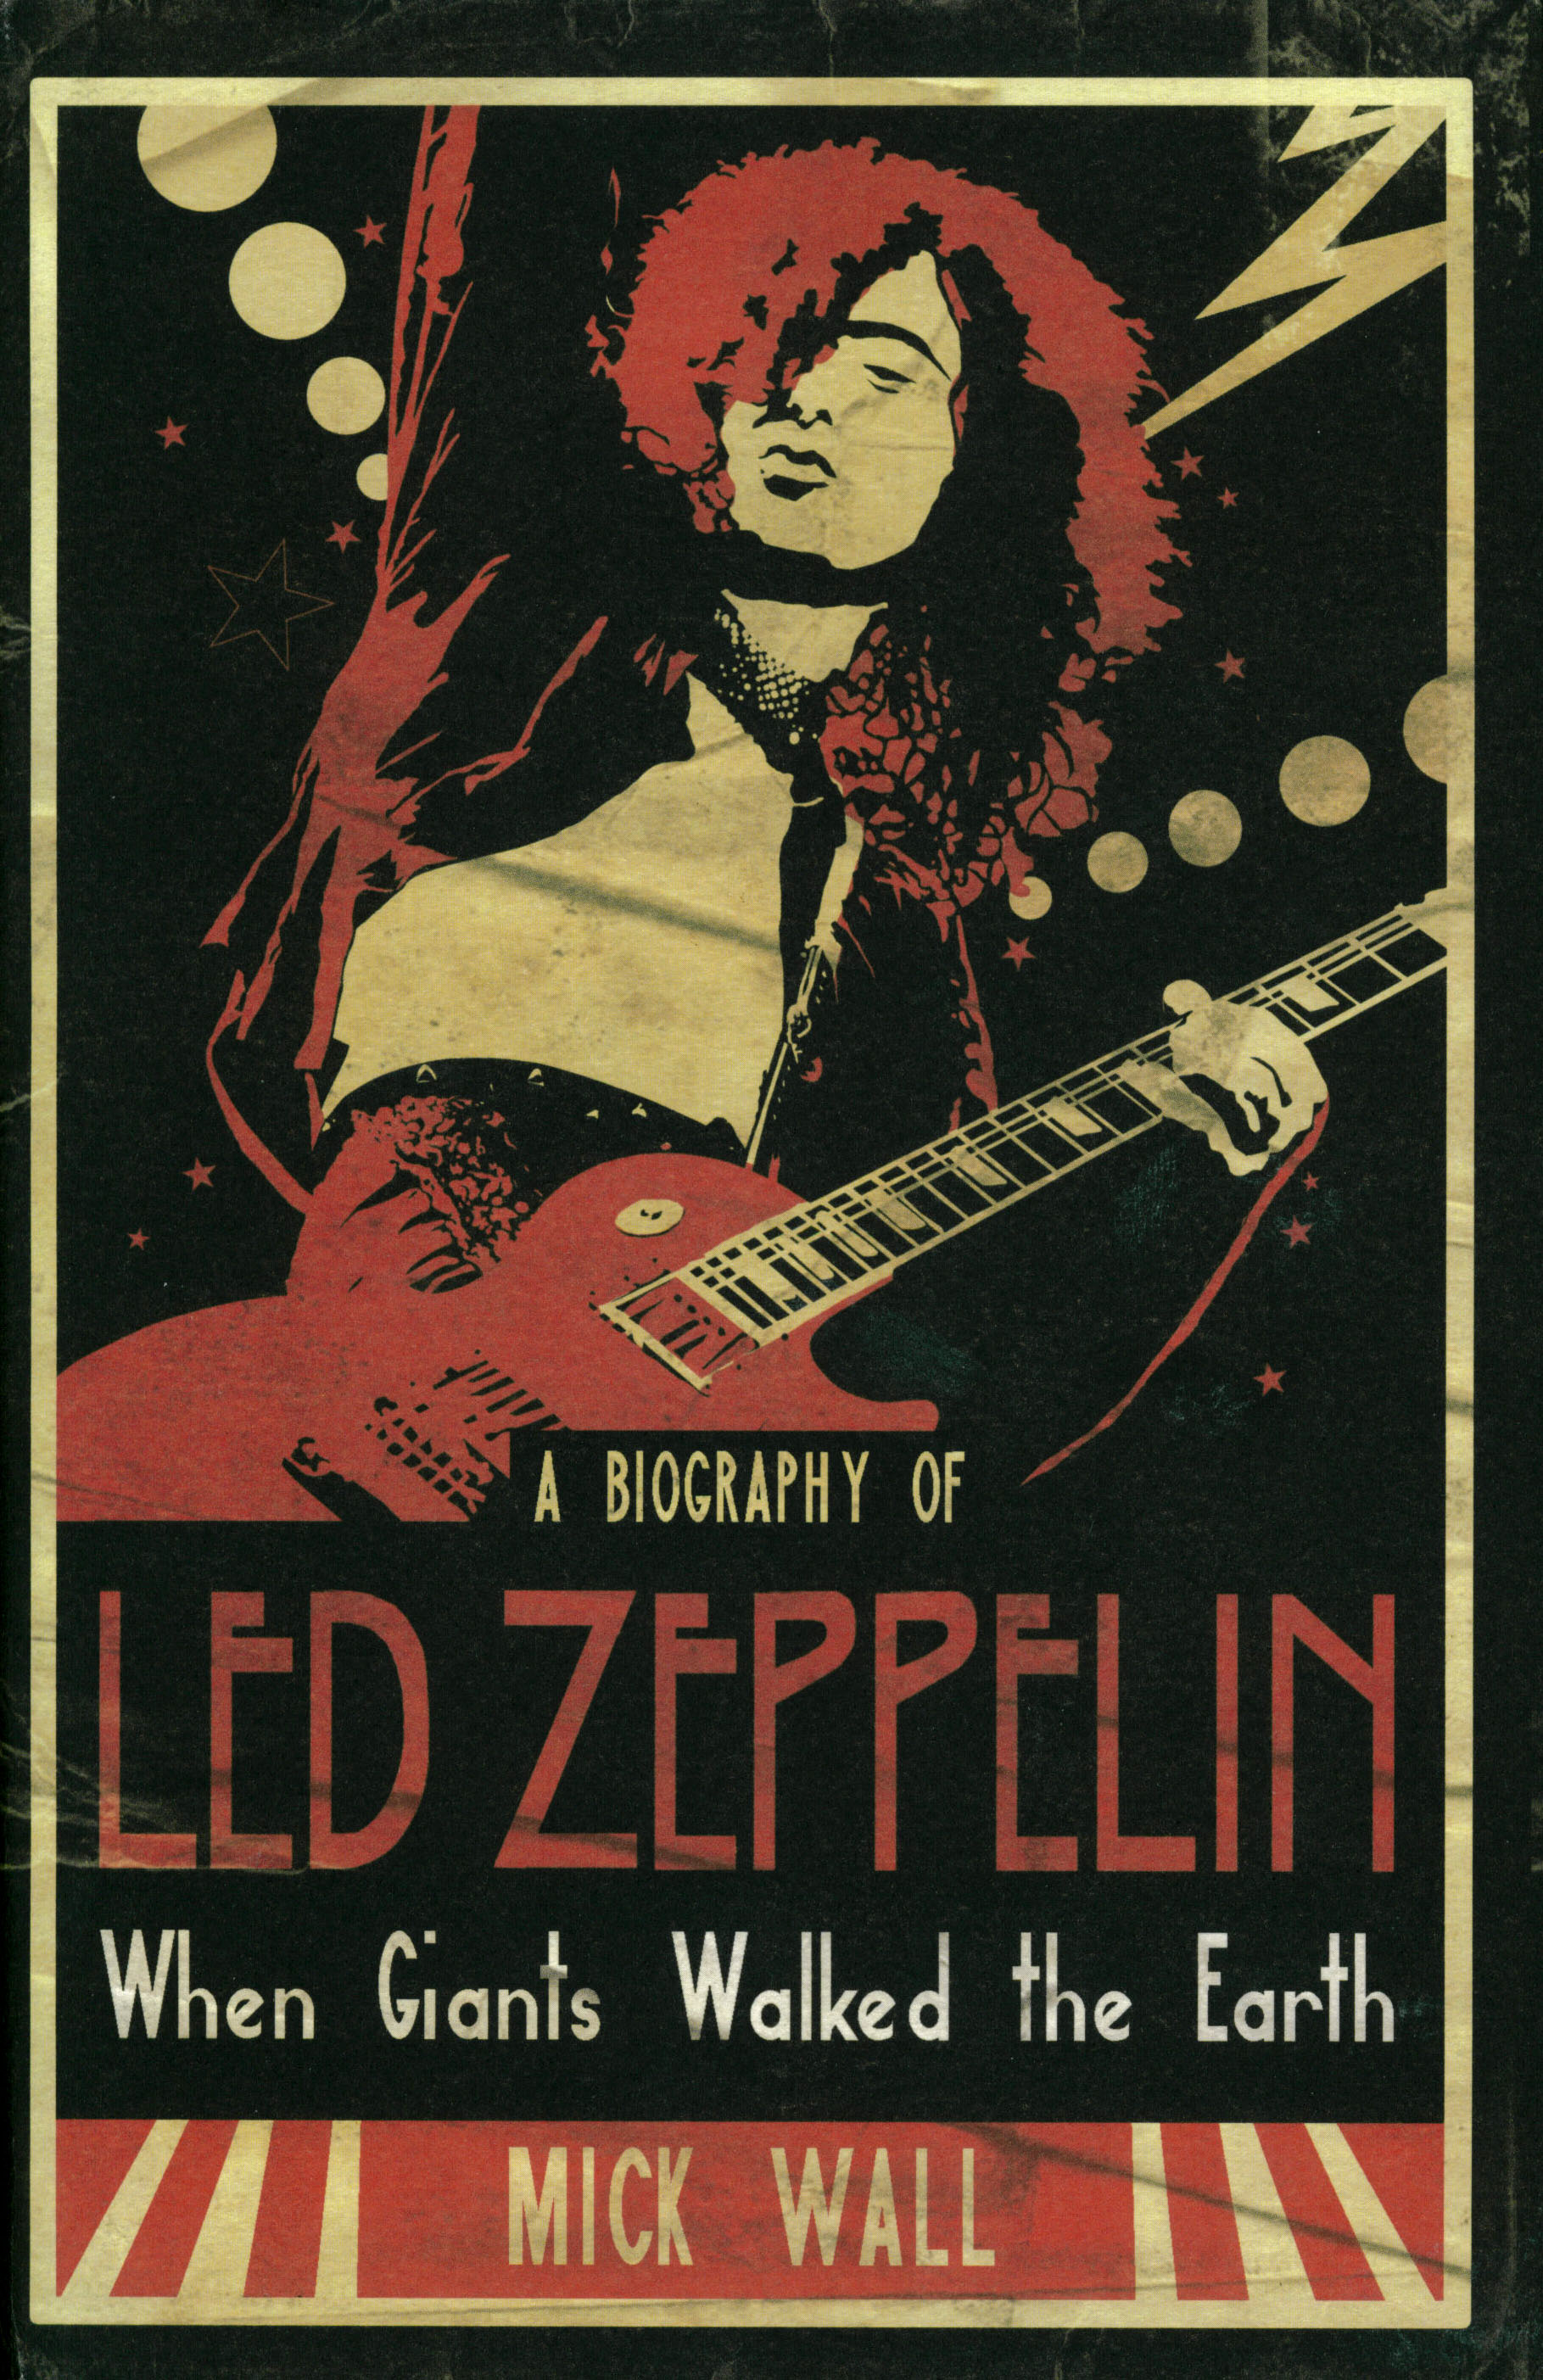 Download 45+ Led Zeppelin HD Wallpaper on WallpaperSafari